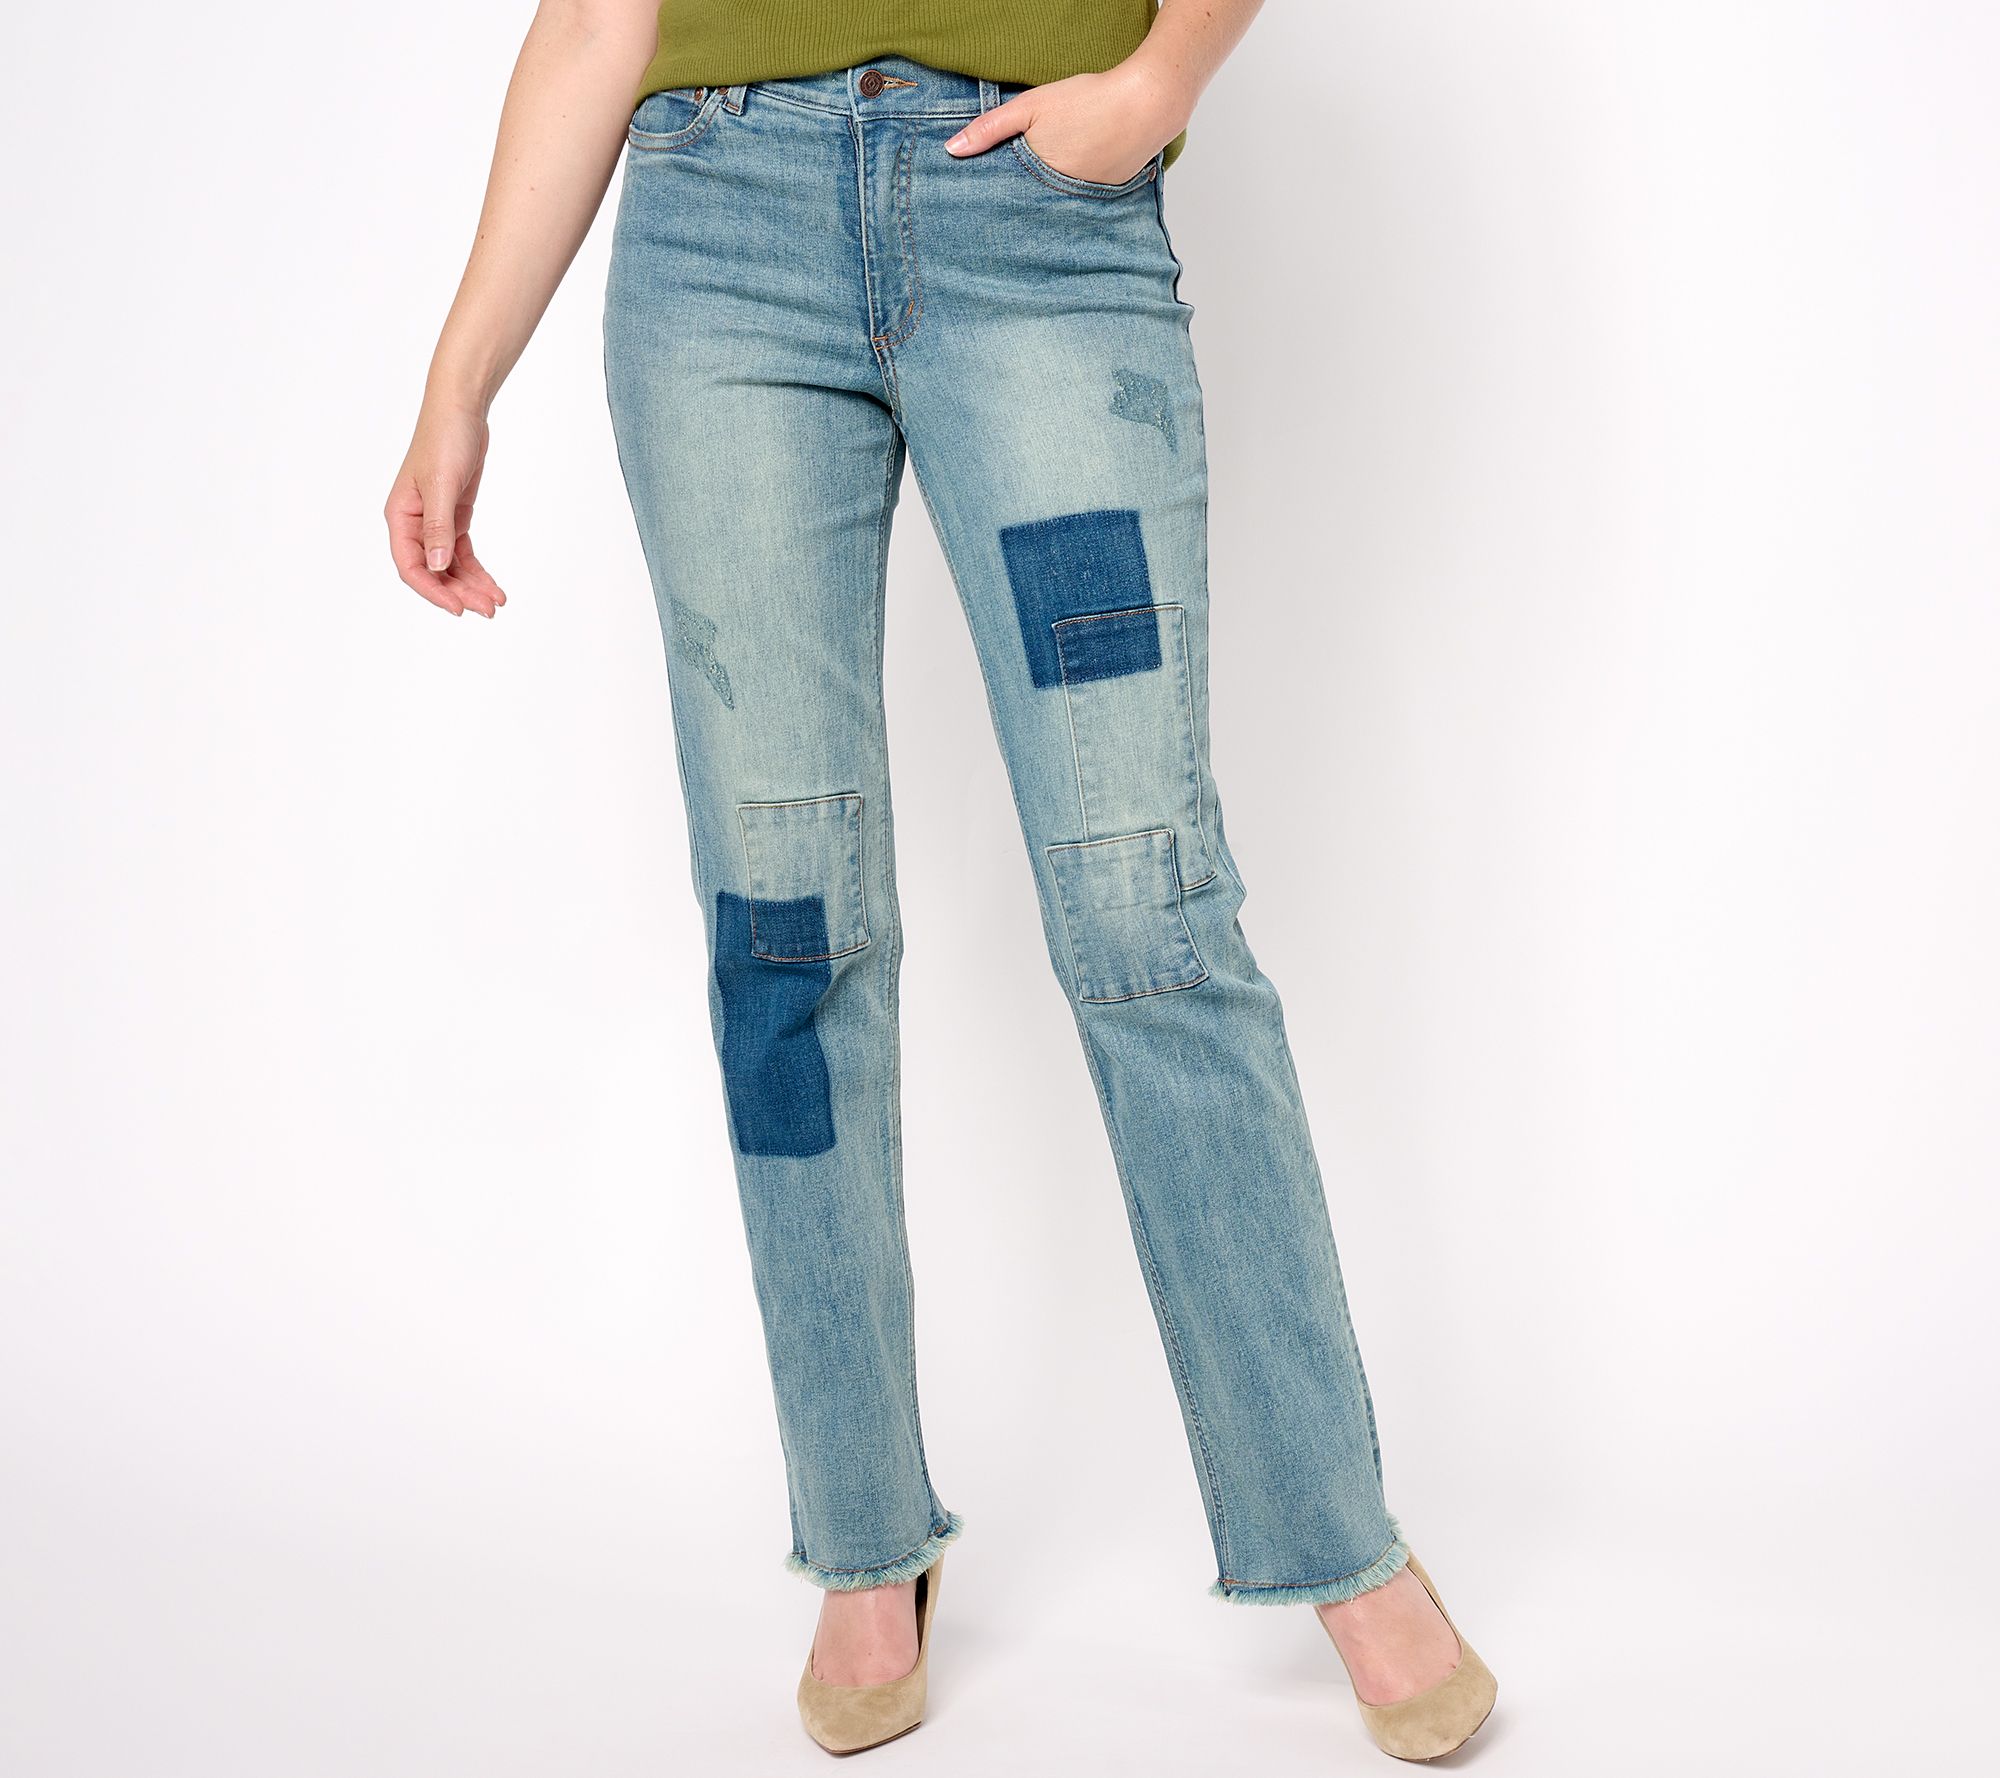 Gap navy stretch pants top size 7 – Fresh Kids Inc.